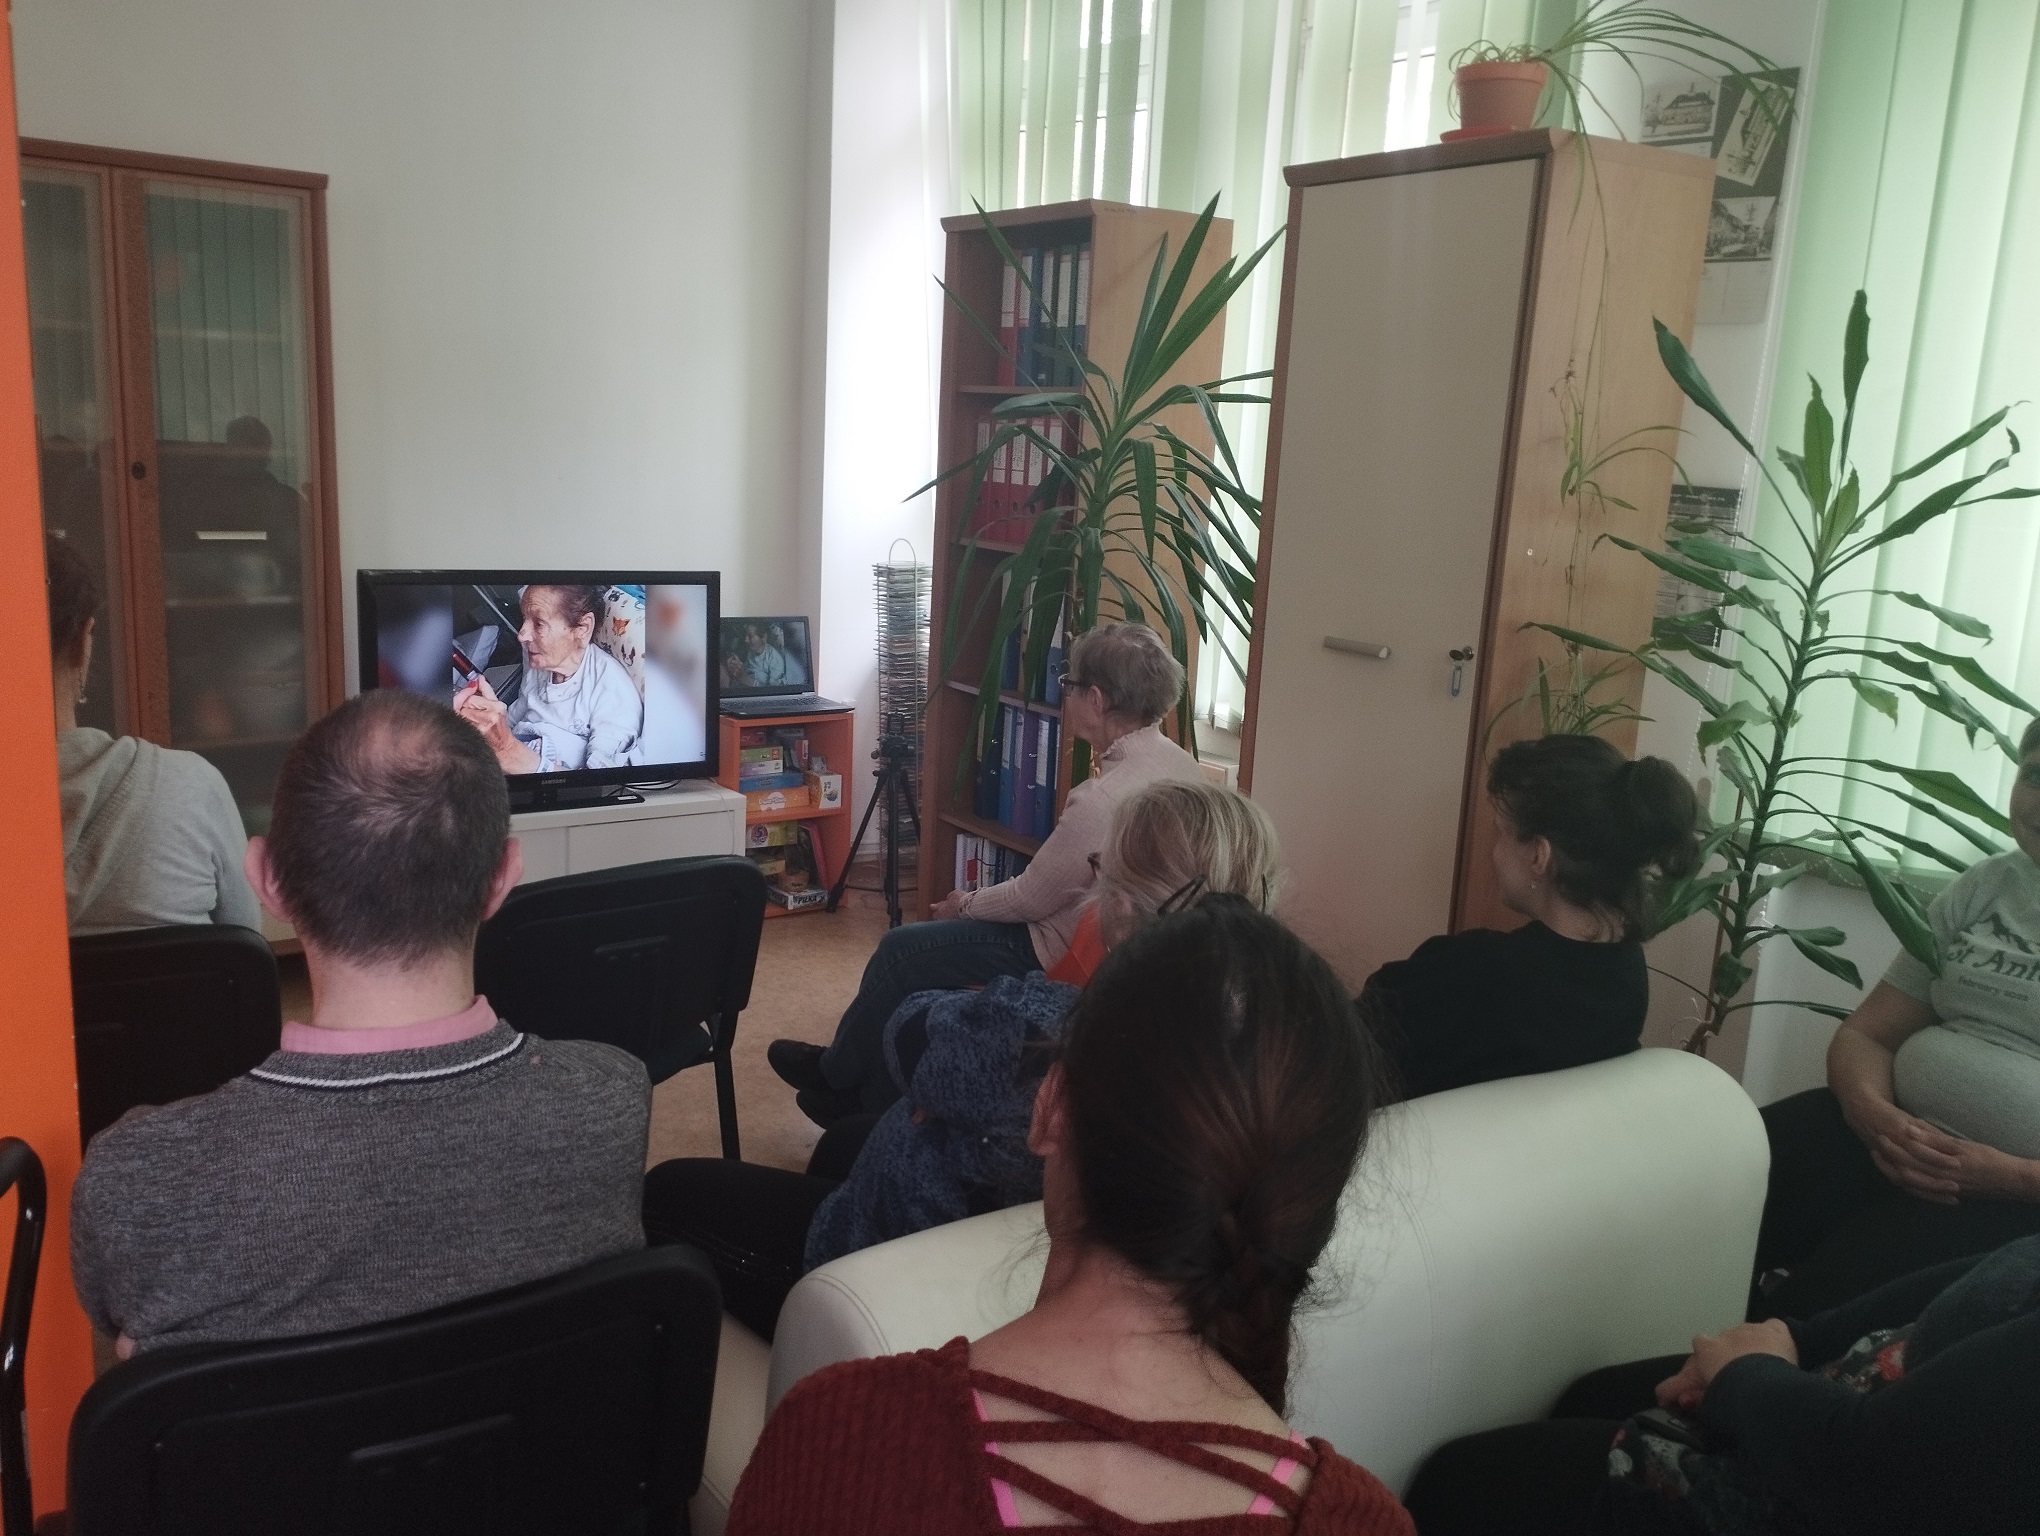 Grupa osób oglądających film na ekranie.